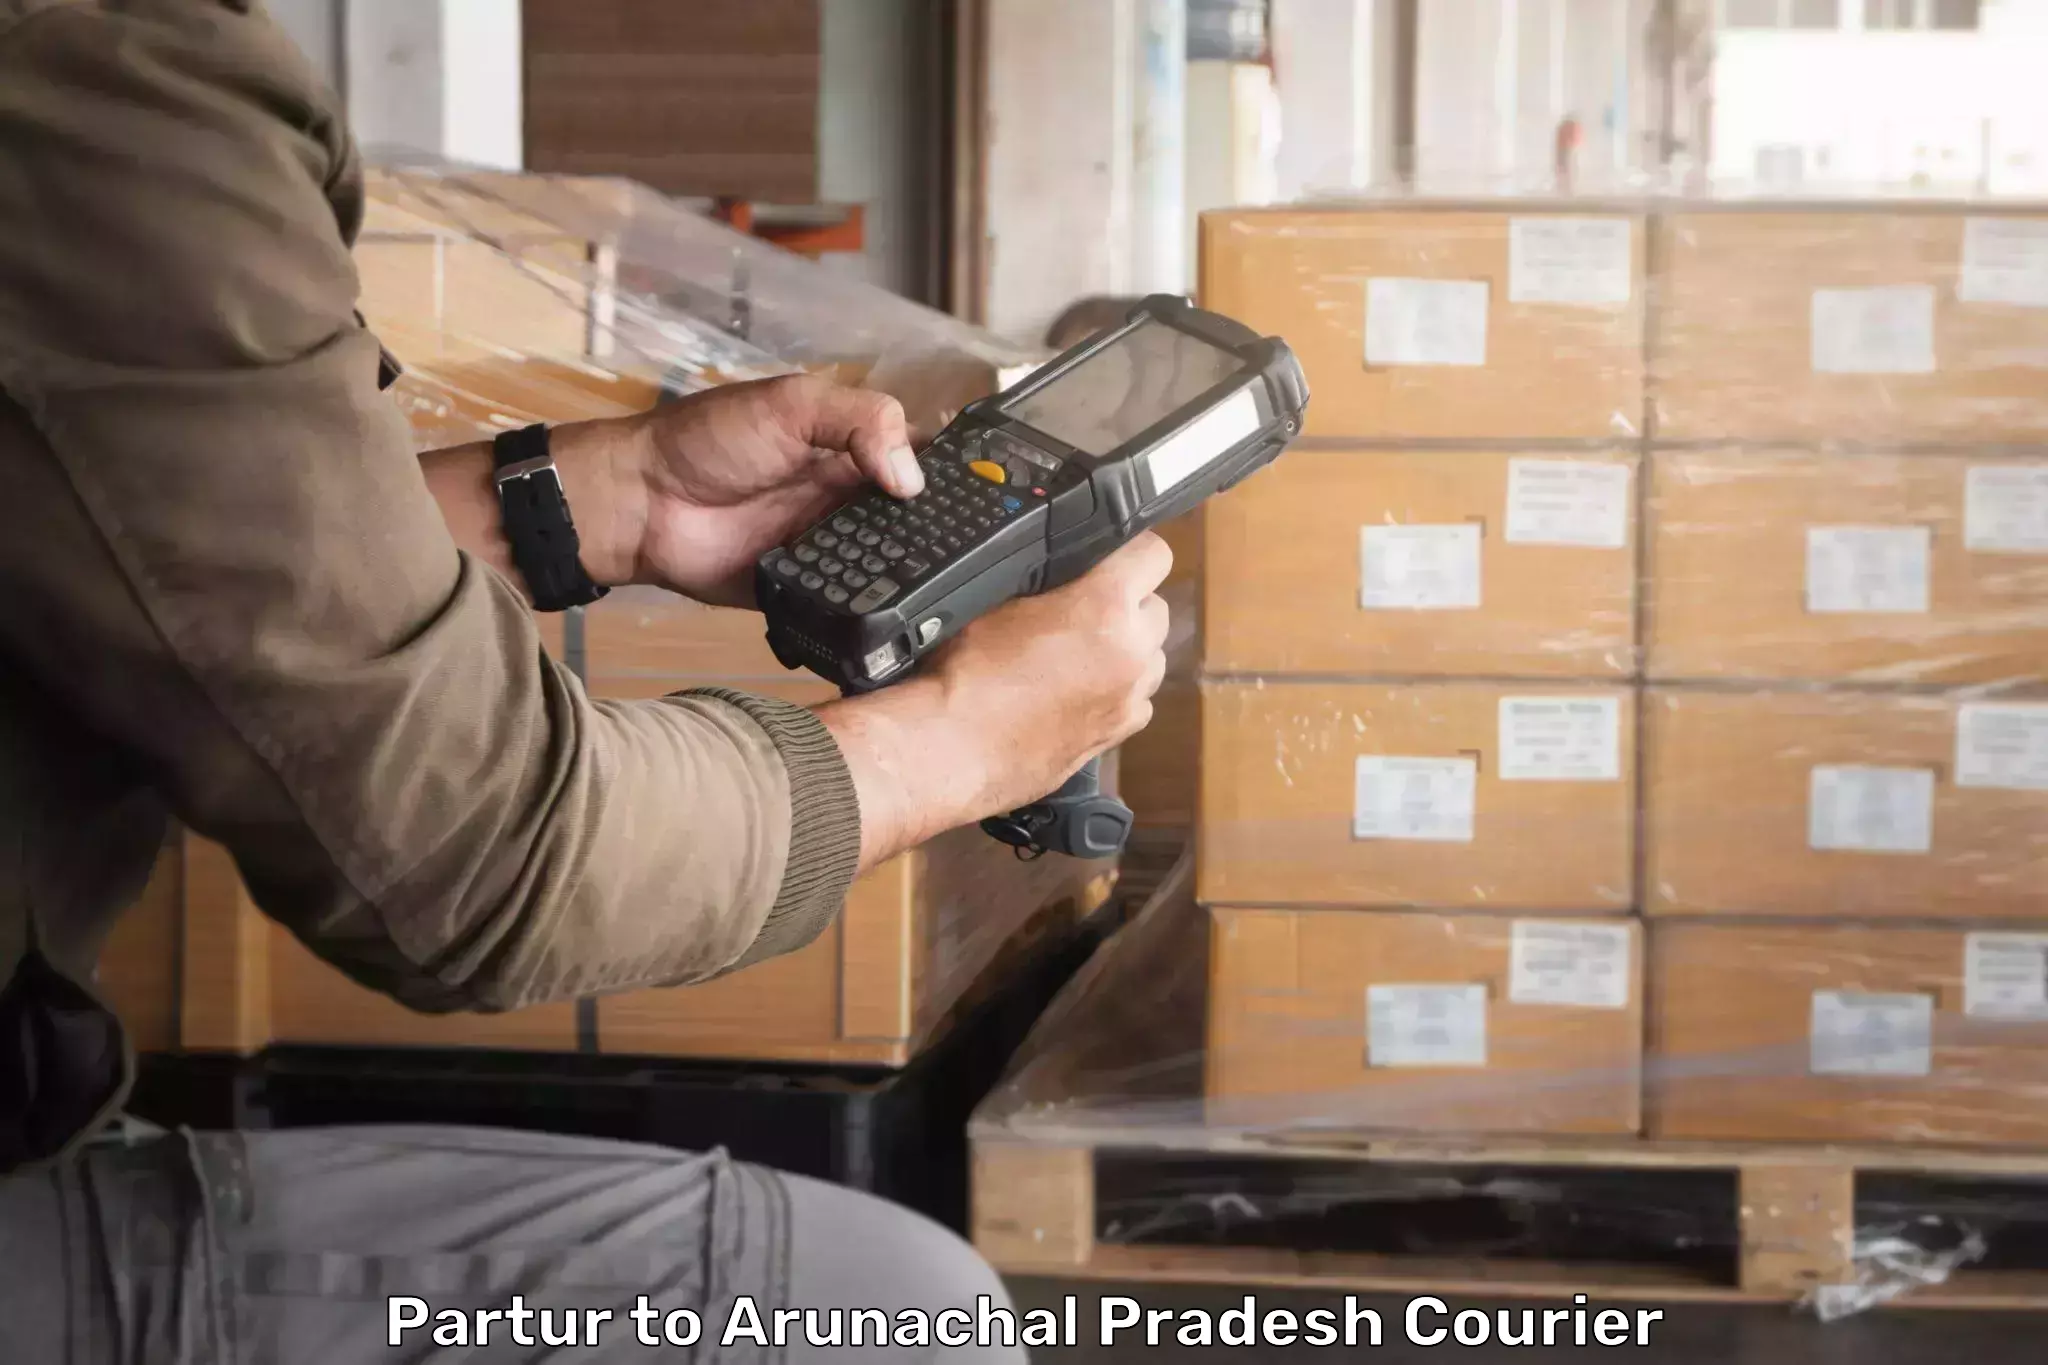 Professional courier services Partur to Arunachal Pradesh